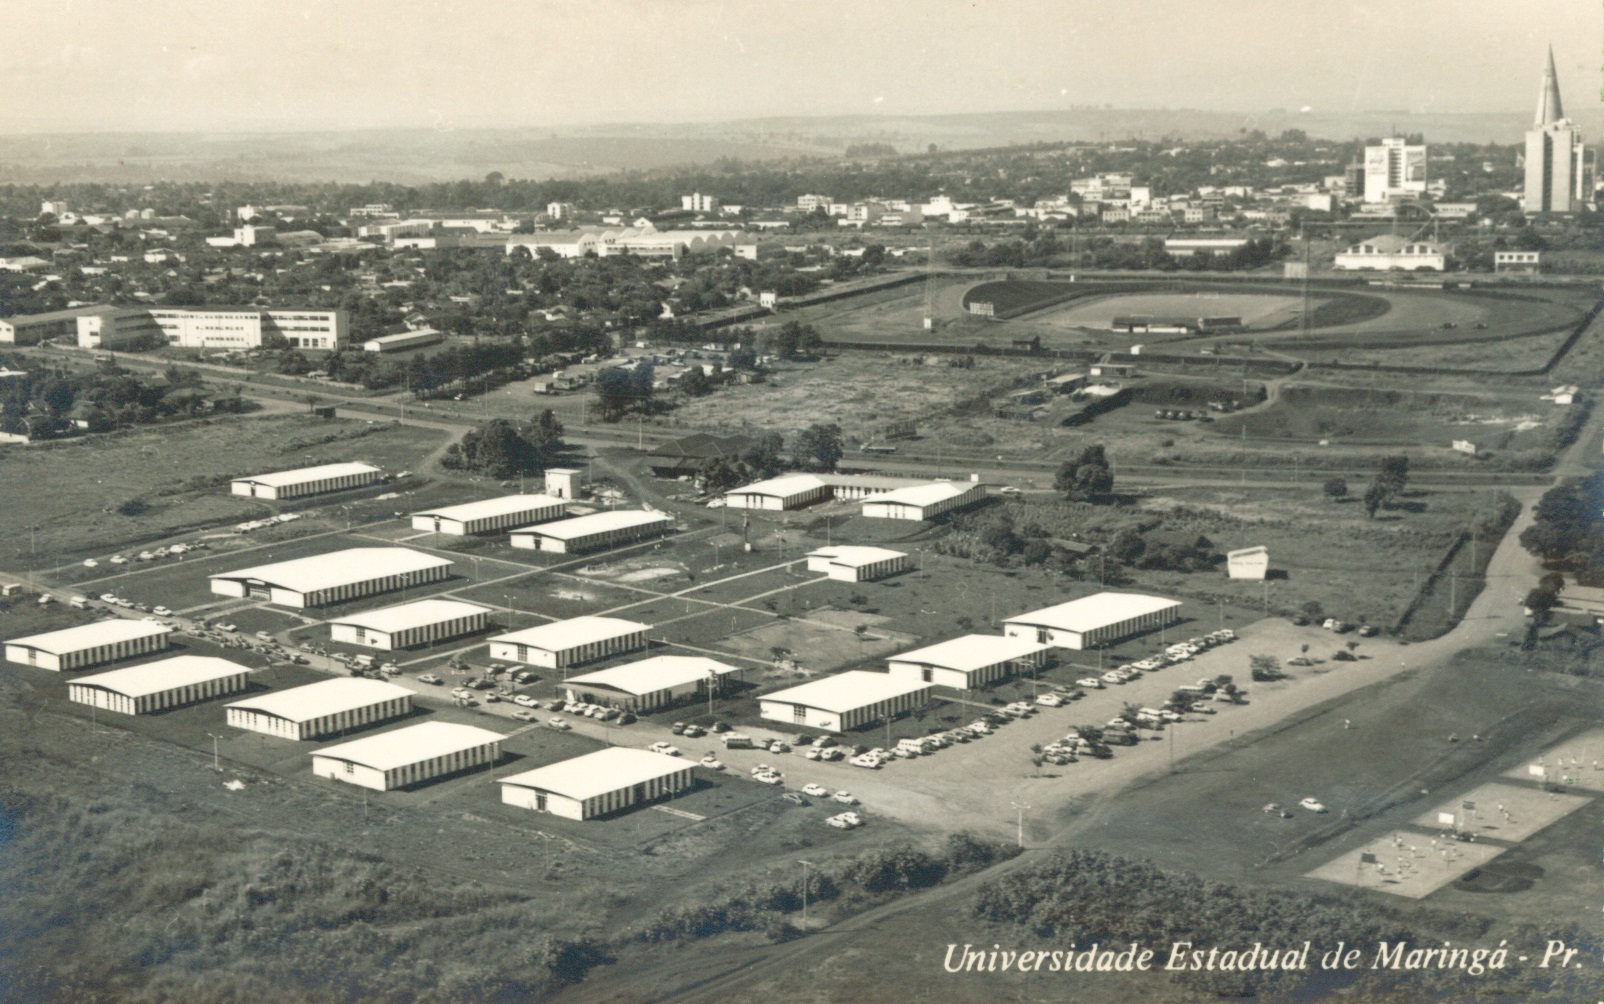 Campus Universitário da UEM - Década de 1970